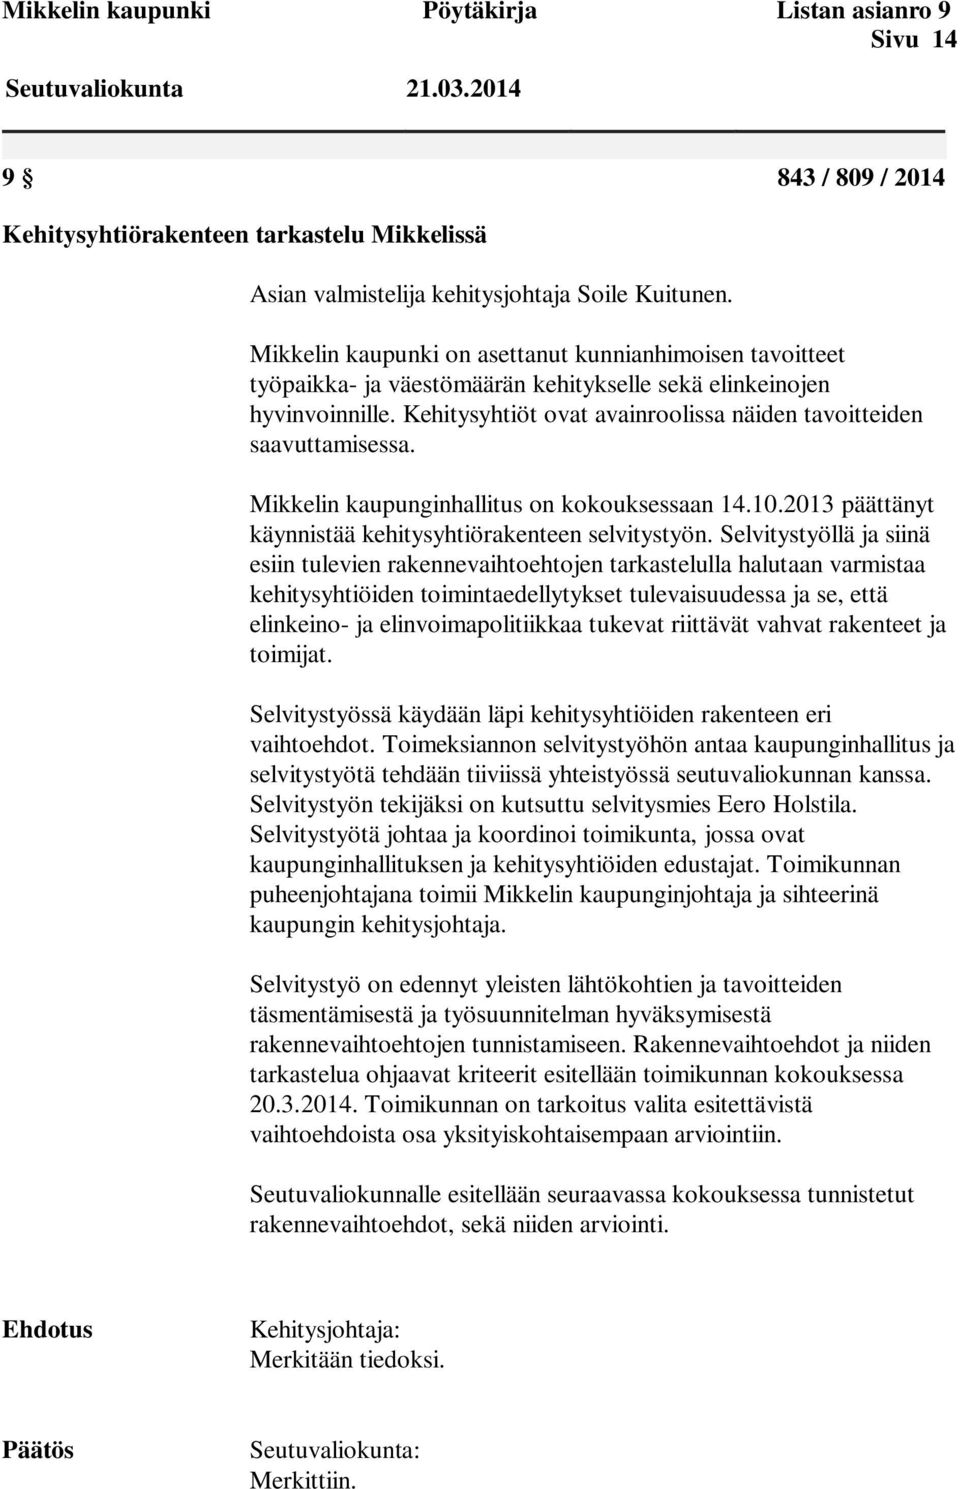 Kehitysyhtiöt ovat avainroolissa näiden tavoitteiden saavuttamisessa. Mikkelin kaupunginhallitus on kokouksessaan 14.10.2013 päättänyt käynnistää kehitysyhtiörakenteen selvitystyön.